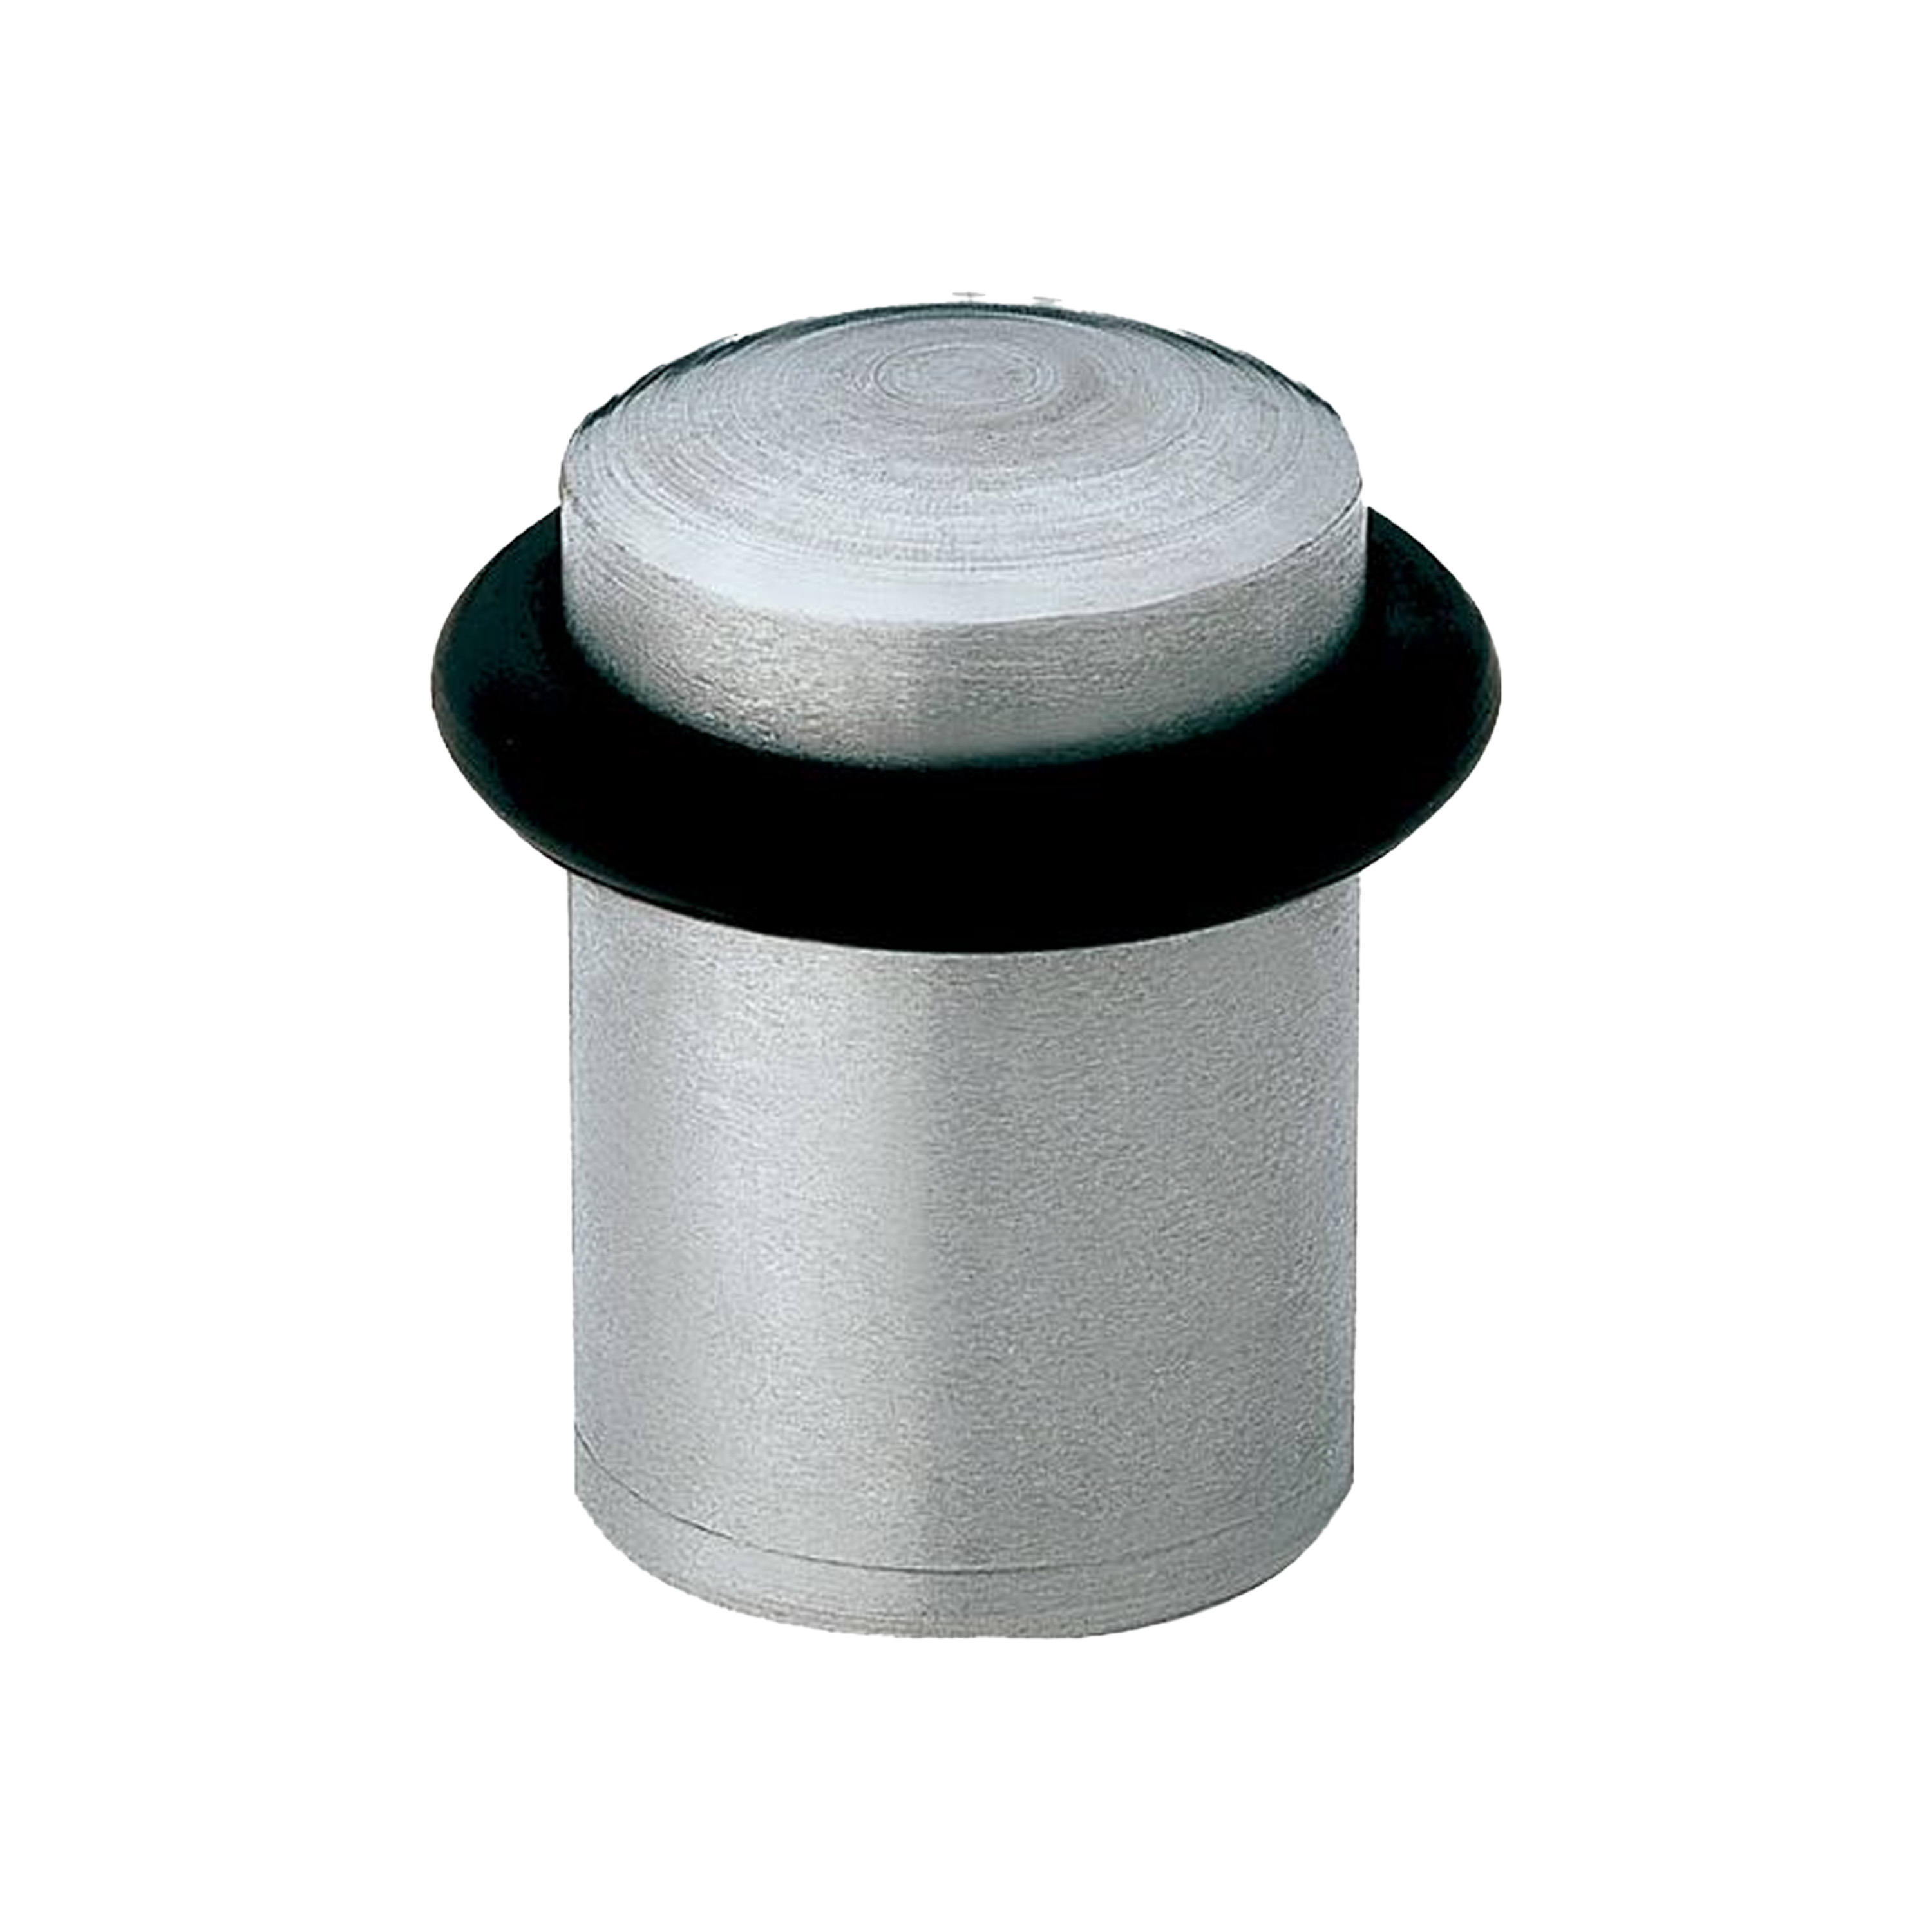 AMIG Deurstopper/deurbuffer - 1x - D20mm - inclusief schroeven - mat rvs  -